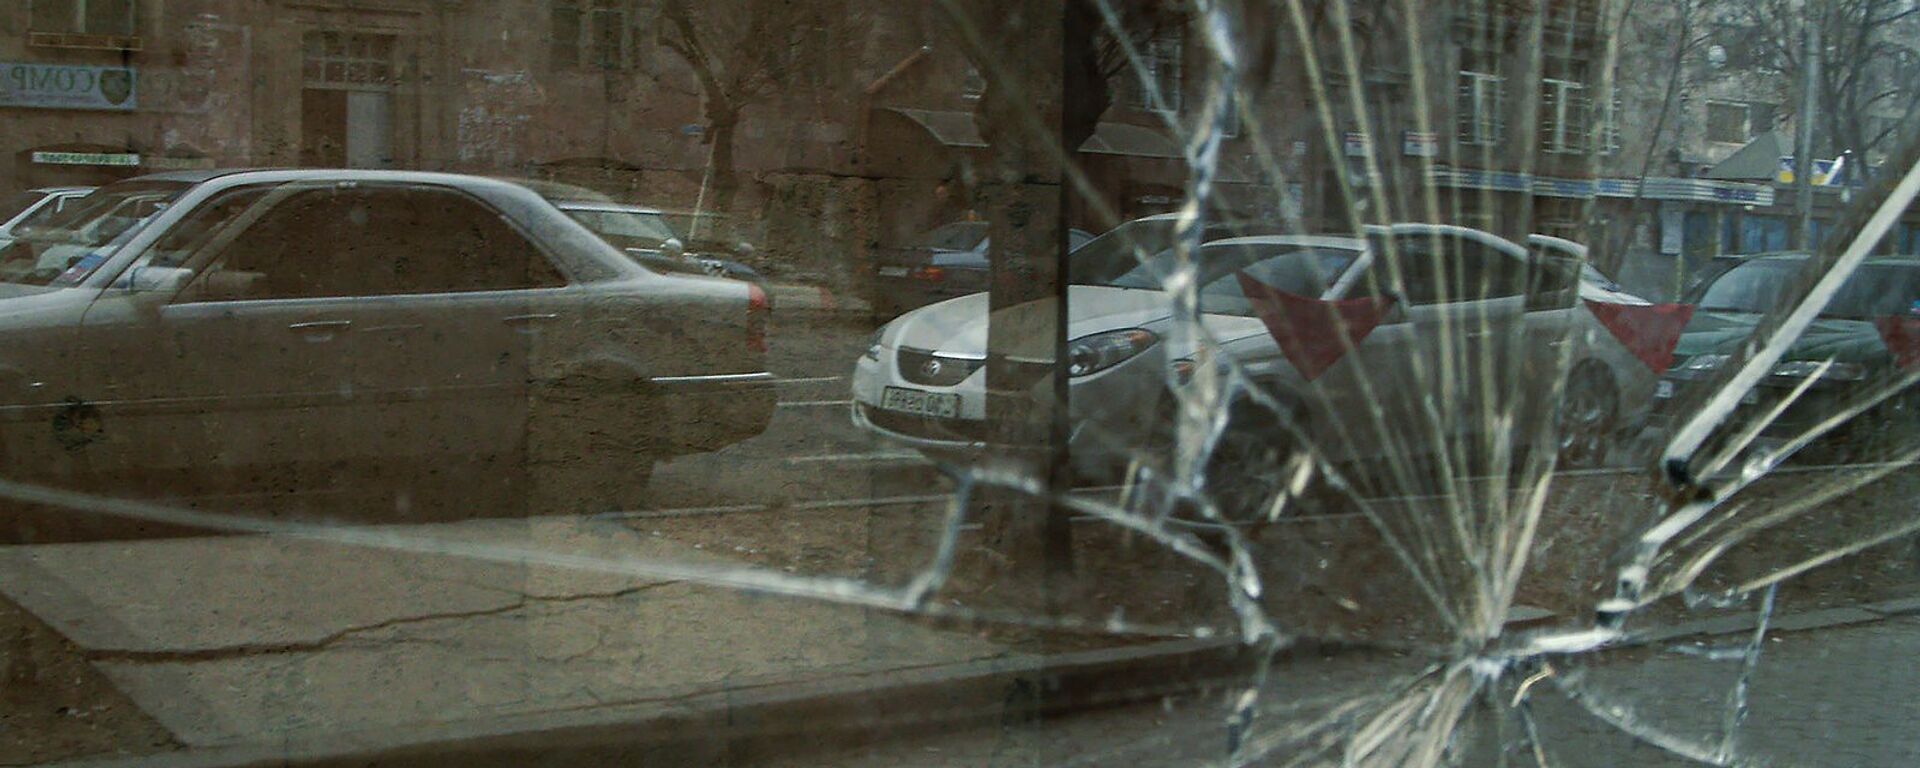 Разбитое стекло на улице - Sputnik Արմենիա, 1920, 14.03.2021